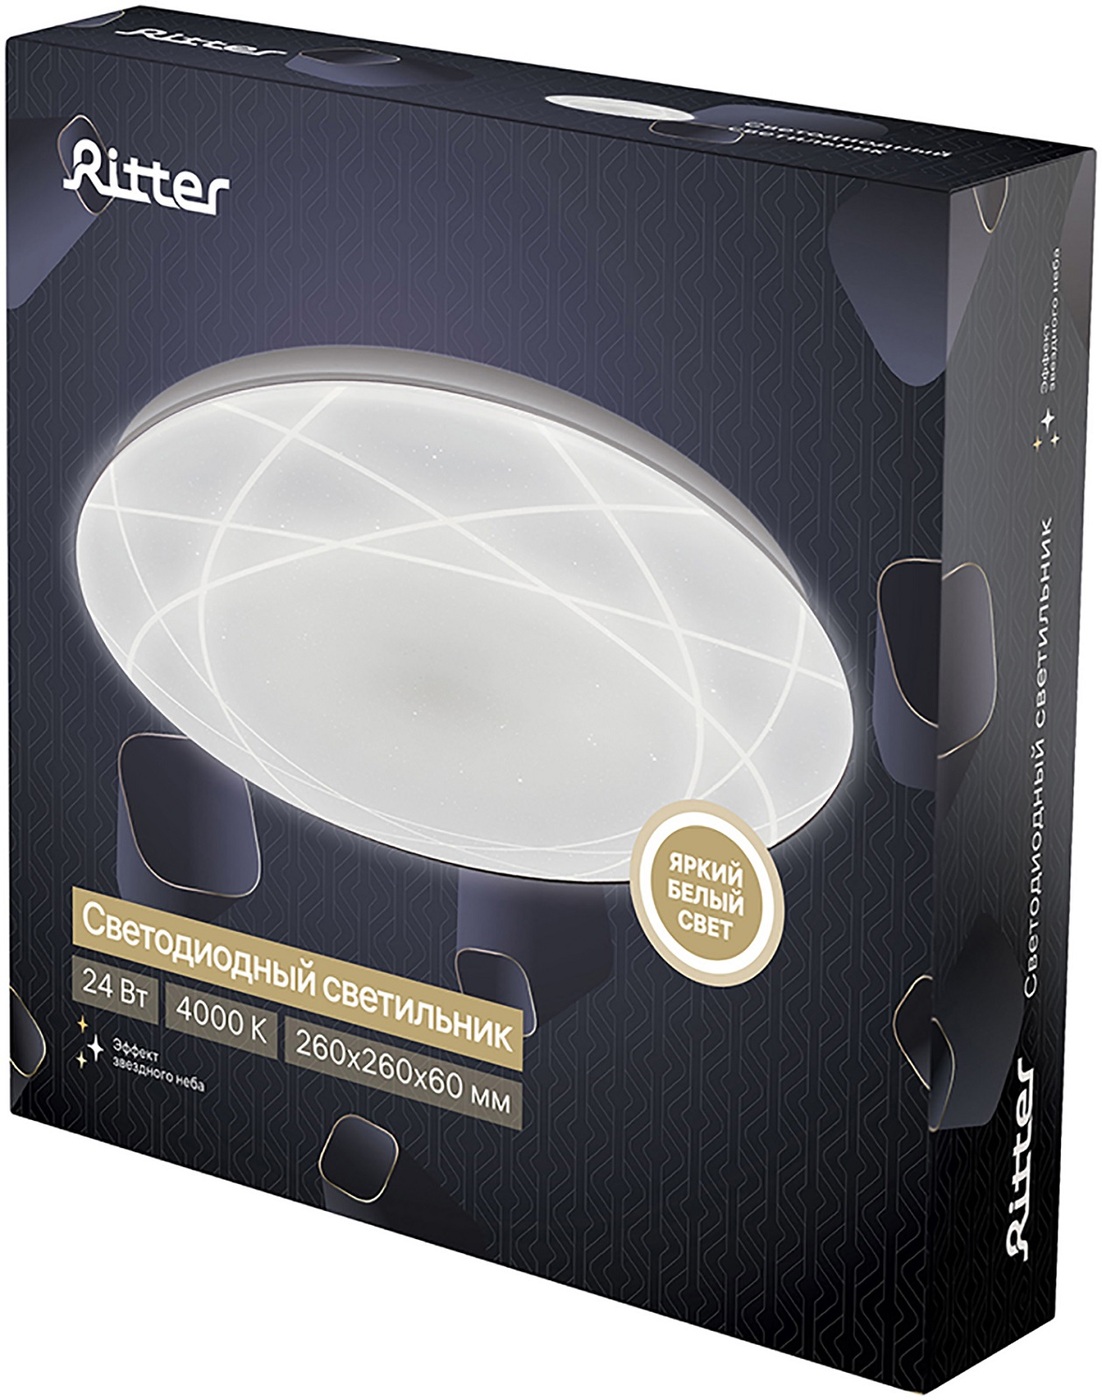 Потолочный светильник Ritter Asolo 52138 9